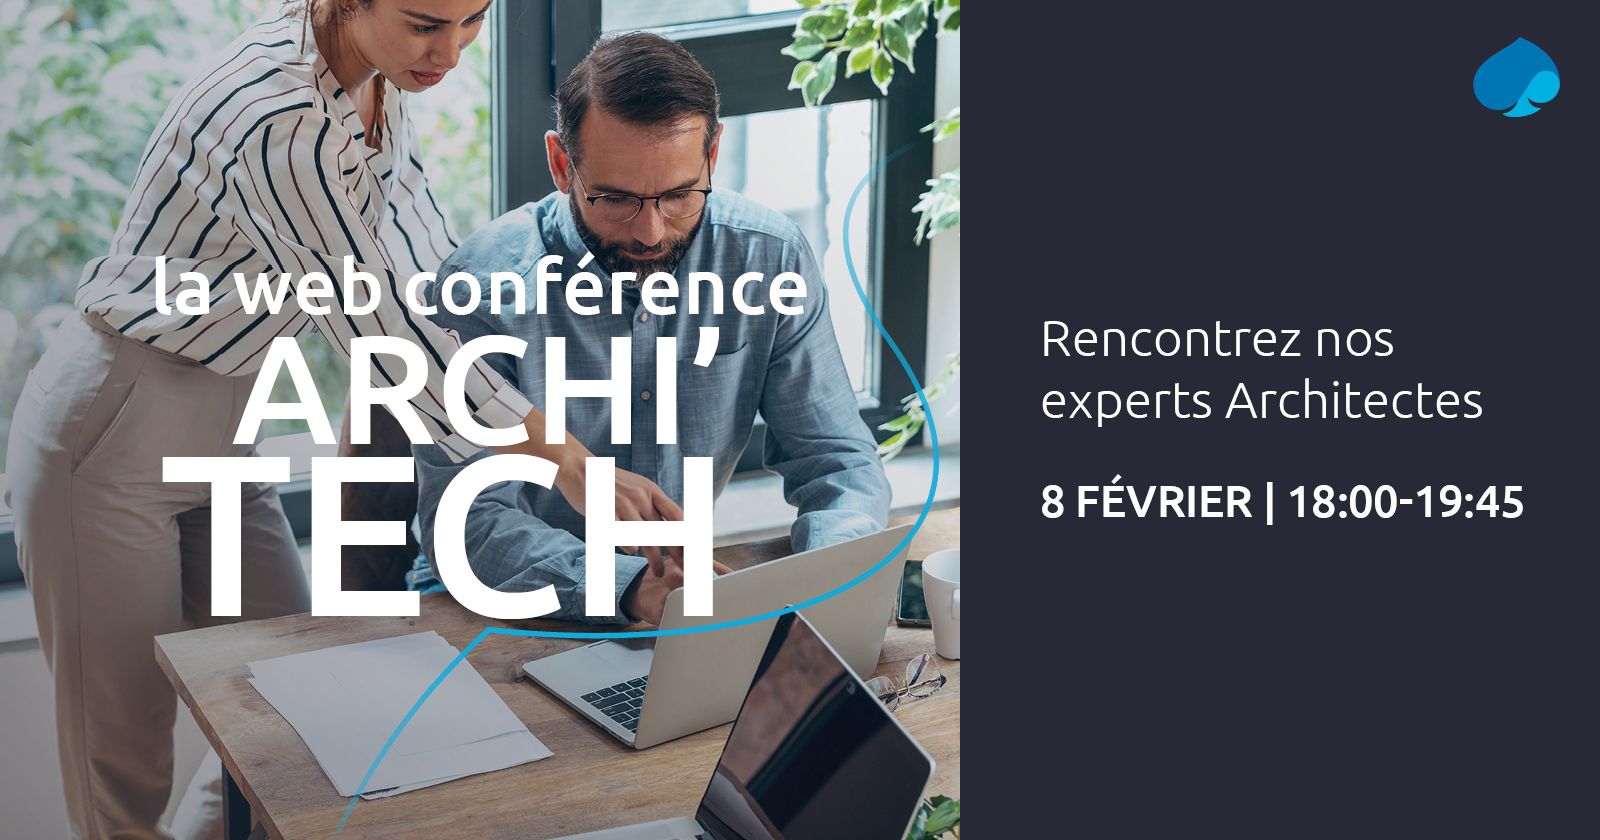 Rejoignez-nous pour une Web conférence Archi Tech Tour le 8 février